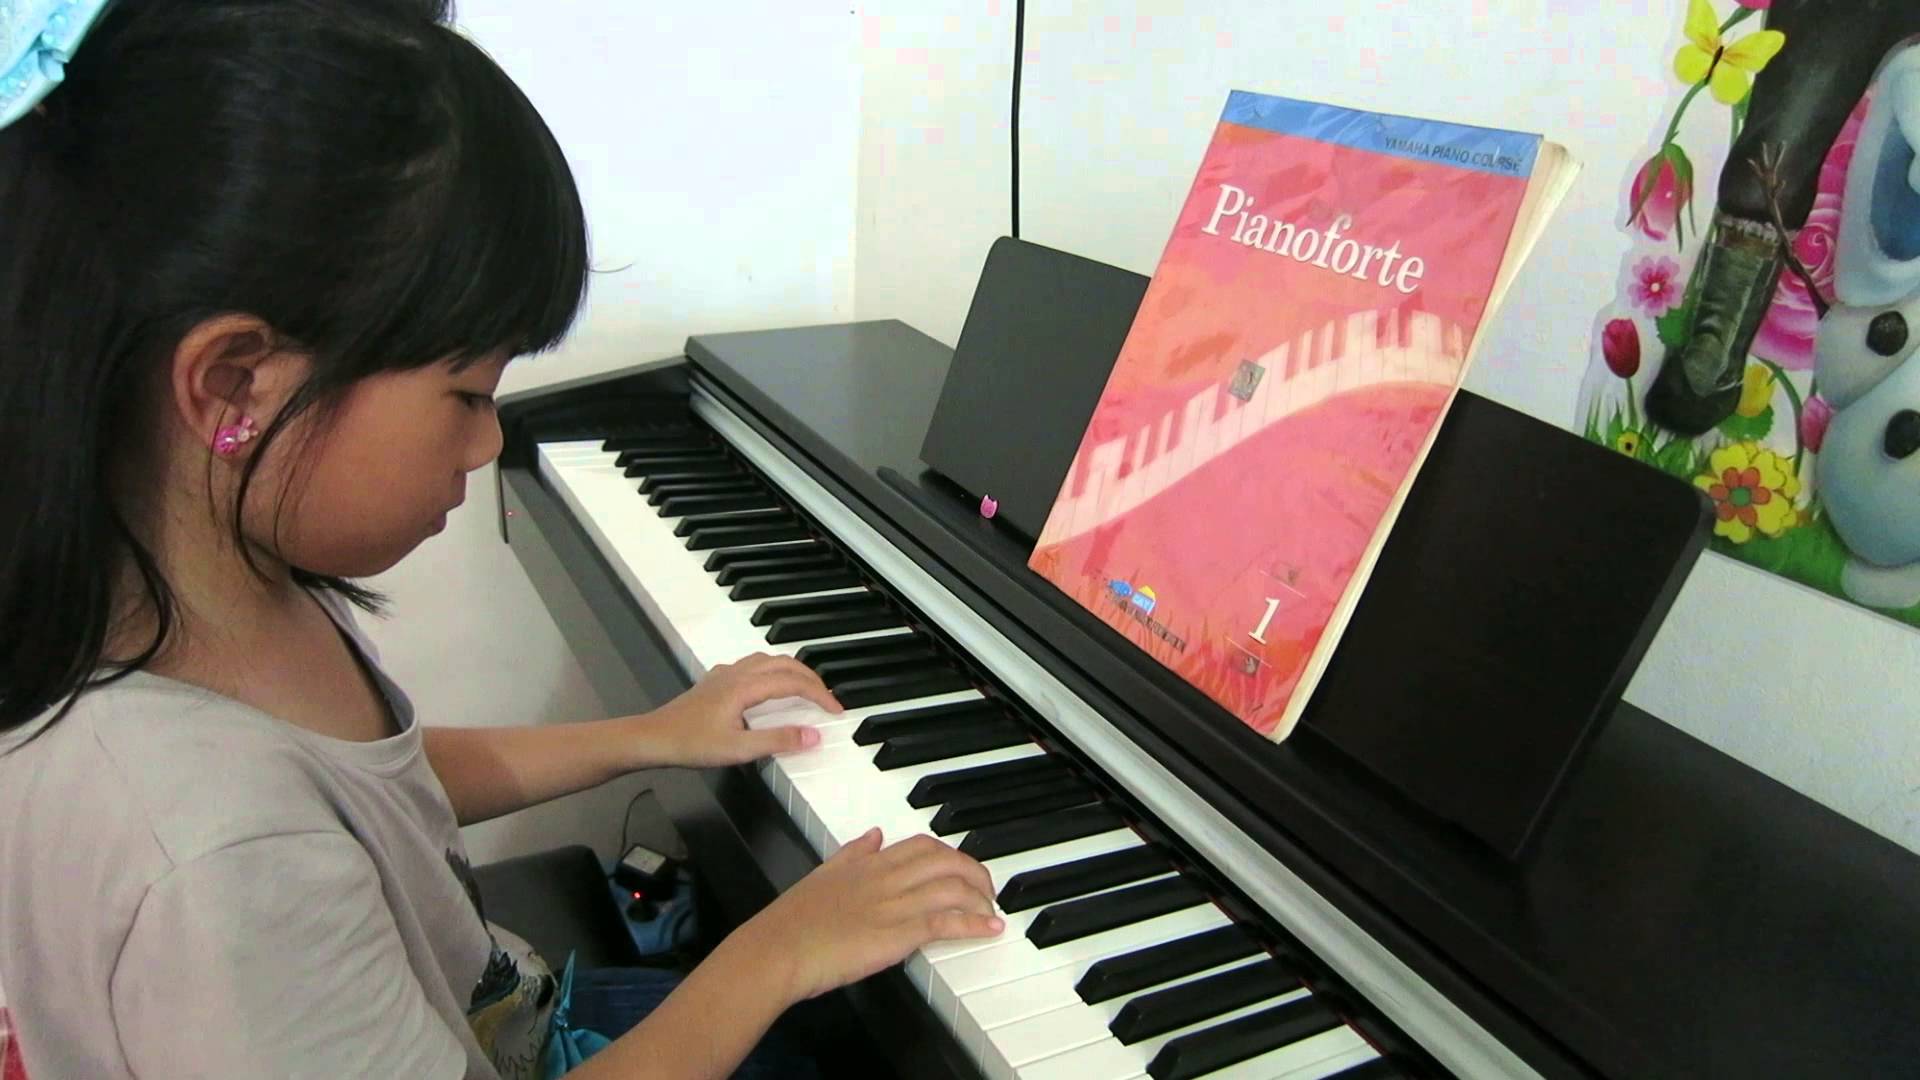 Konsol Duvar Dik Stand Piyano Elektro Dijital Music Klasik Müzikler Bilgiler Çalgı Enstrümanı Piyanosu Çal Nedir Bilgi Sözlük Pianist Piyanolar Konseri Dinleti Çal Çocukları